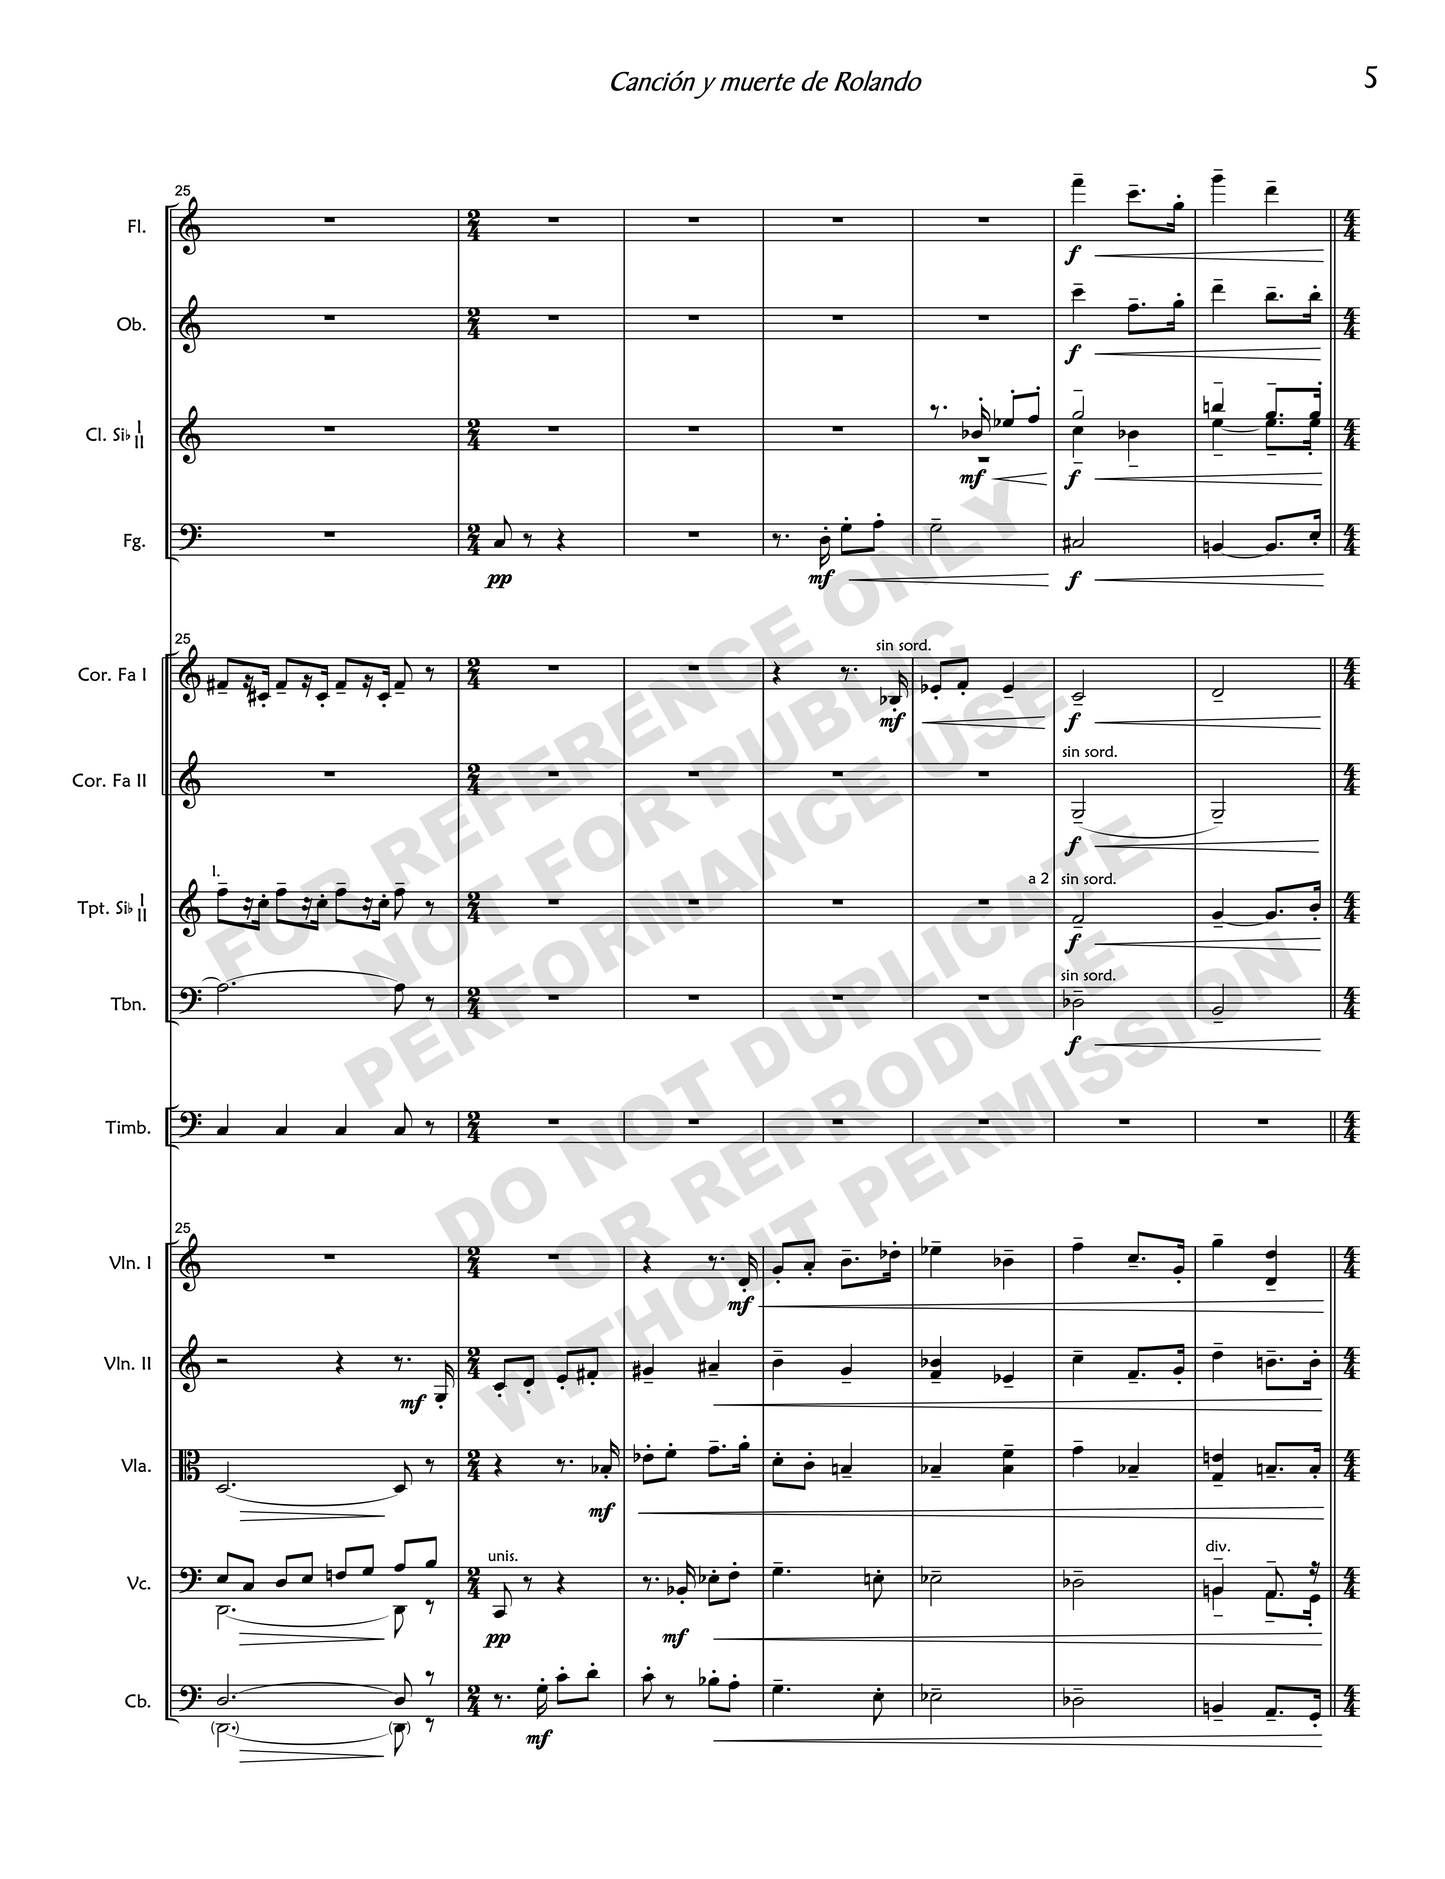 Canción y muerte de Rolando, for soprano and orchestra